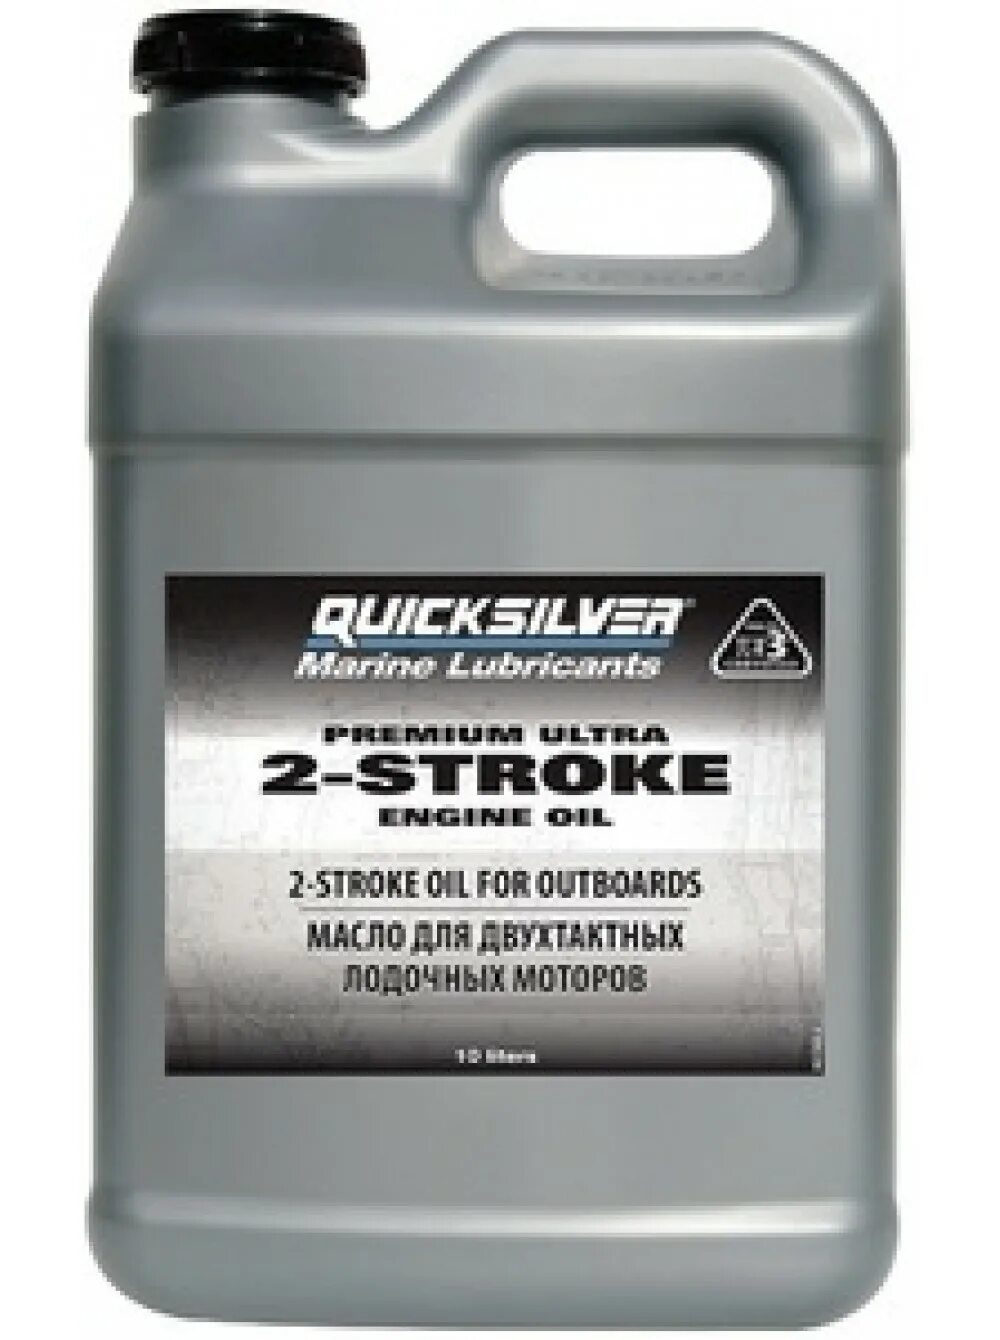 Масло Quicksilver 2-stroke. Quicksilver масло для лодочных моторов 2 тактных. Масло для 2-тактных моторов Quicksilver Premium Ultra TC-w3. Quicksilver Premium Ultra 2-stroke. Масло для лодочного мотора 9.8